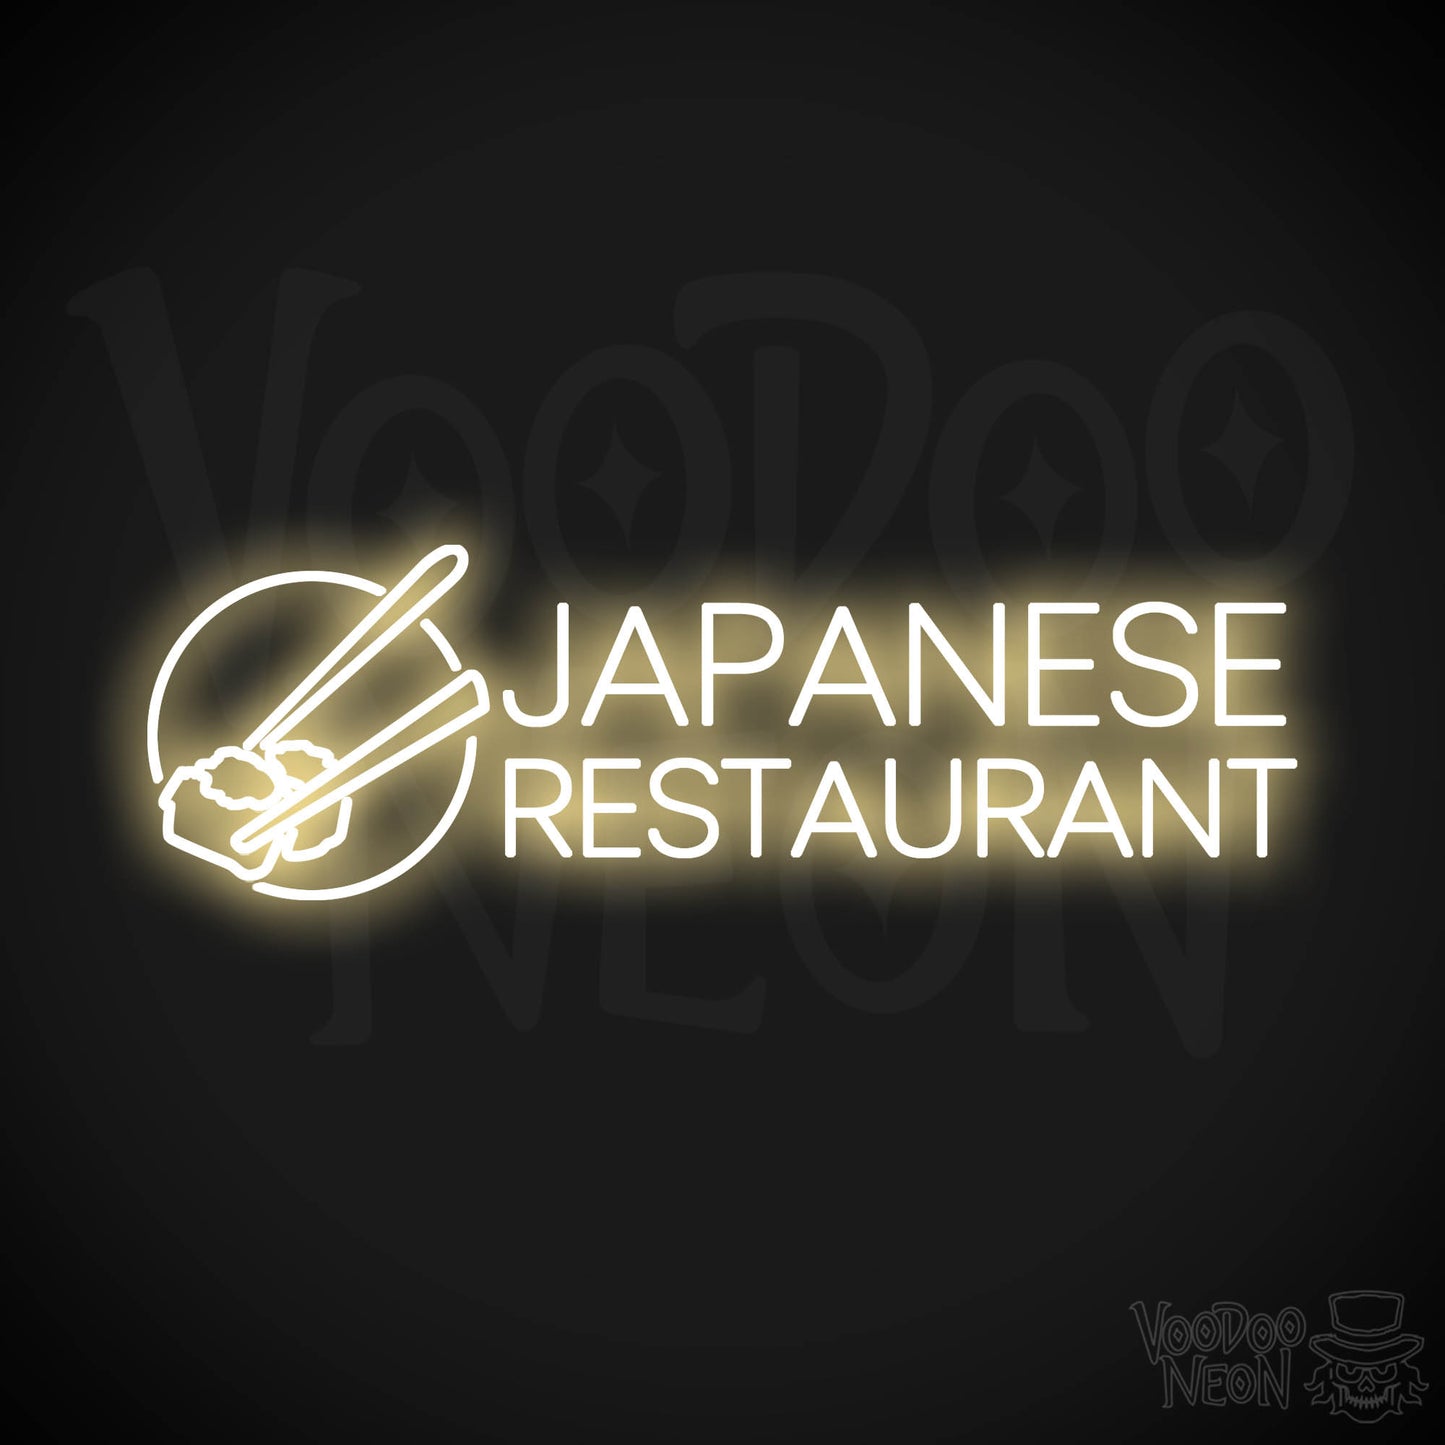 Japanese Restaurant LED Neon - Warm White